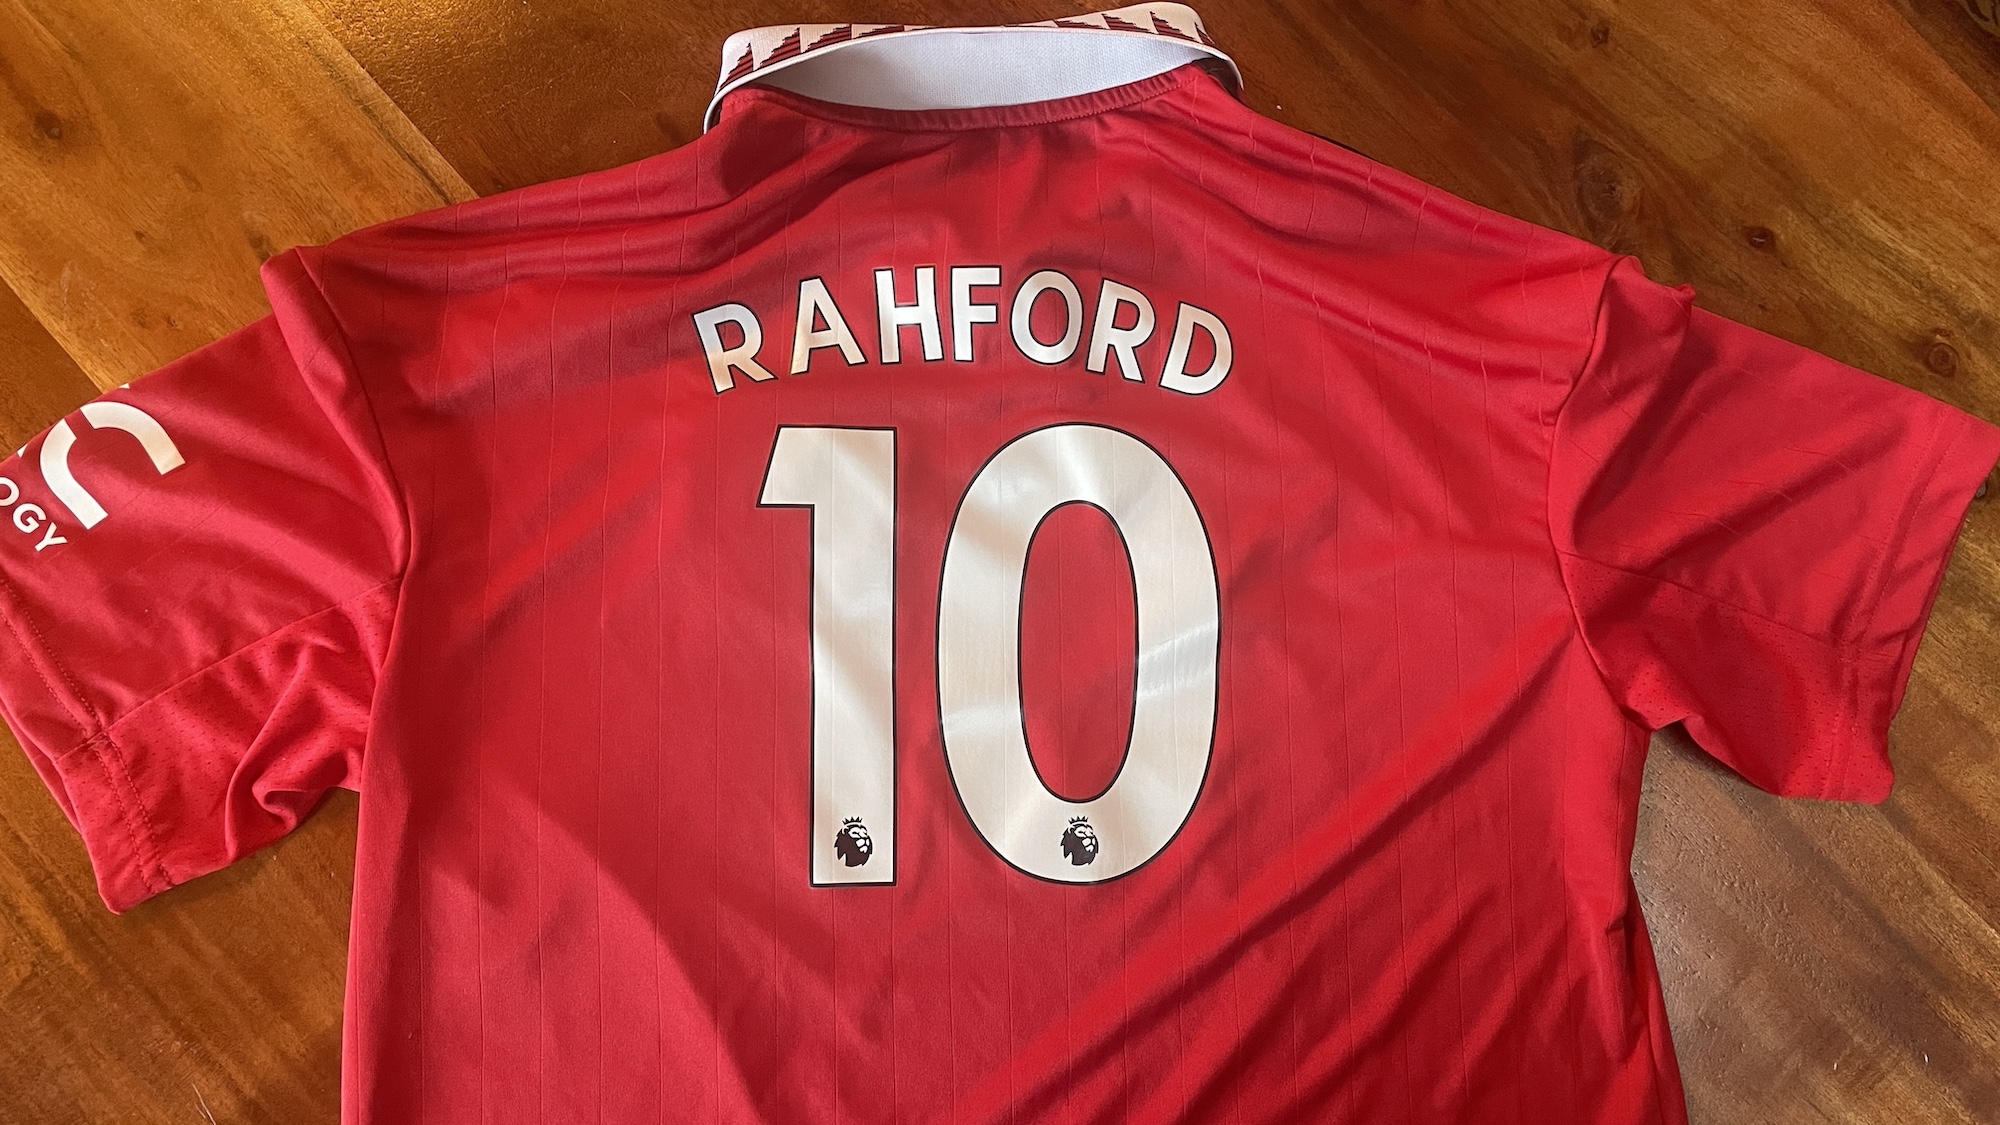 A Marcus Rashford kit that says "Rahford."